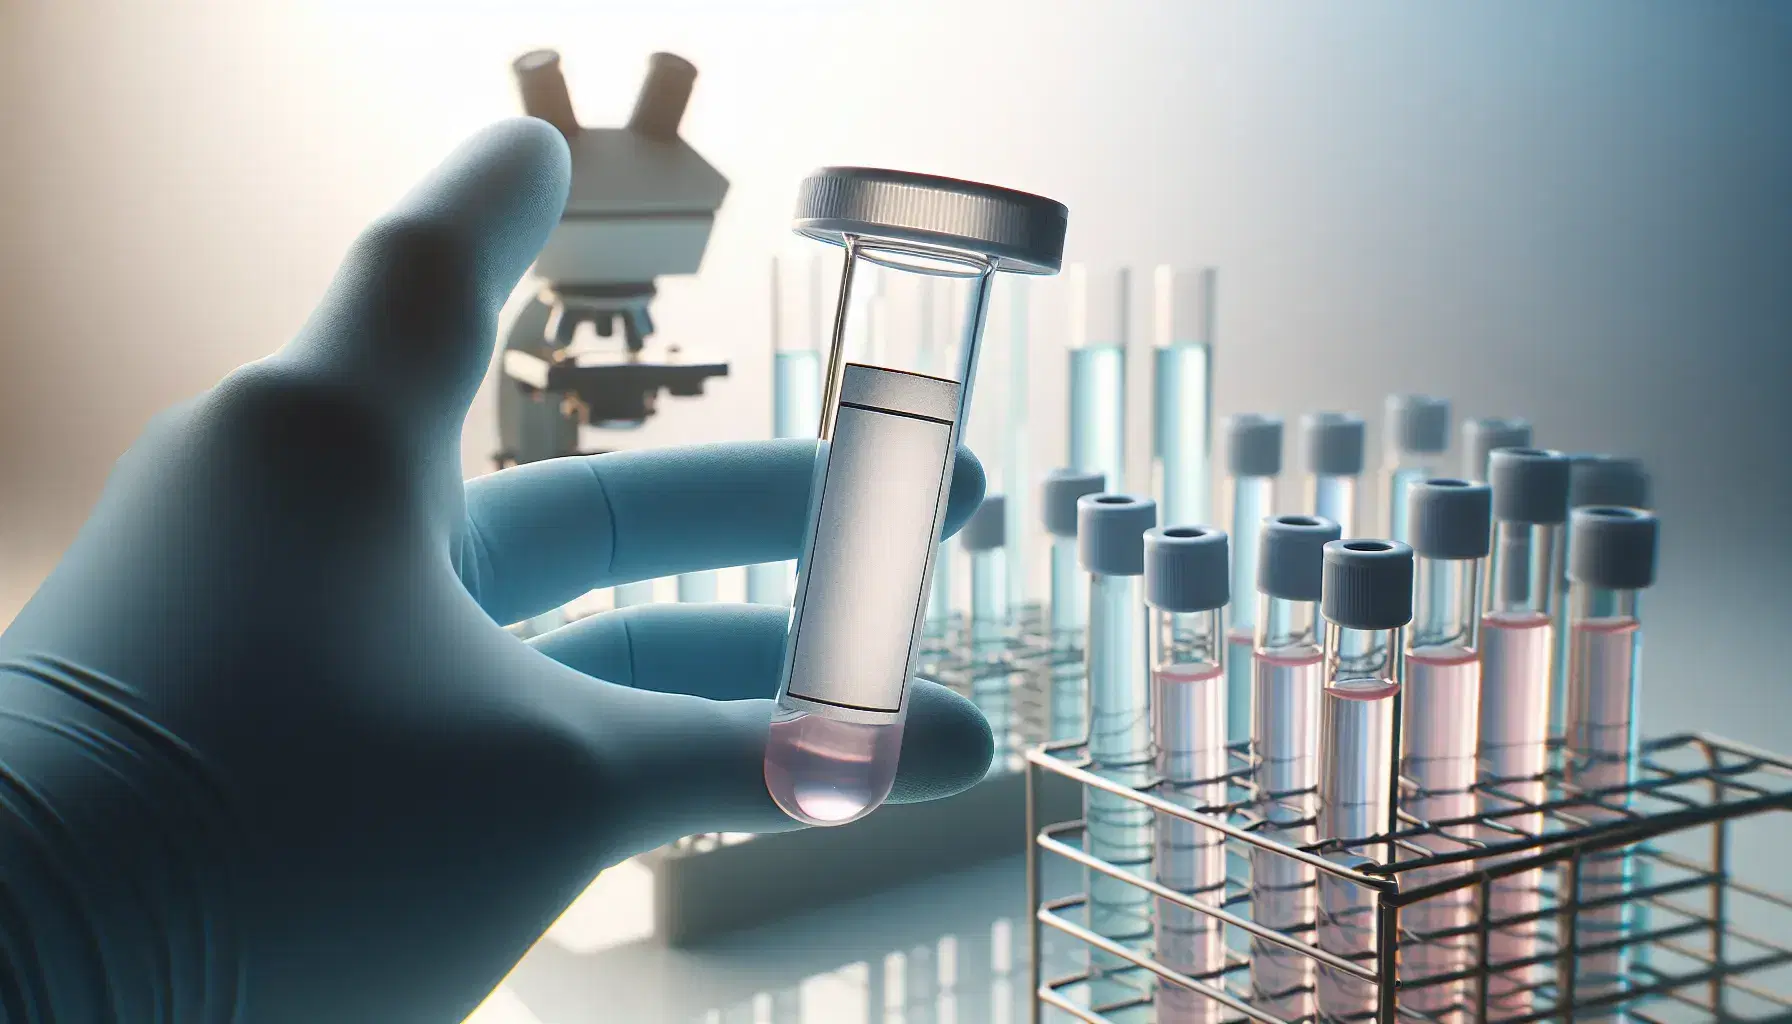 Manos con guantes de látex azules sostienen un tubo de ensayo con líquido rosa y etiqueta blanca, con microscopio y tubos de colores en fondo desenfocado.